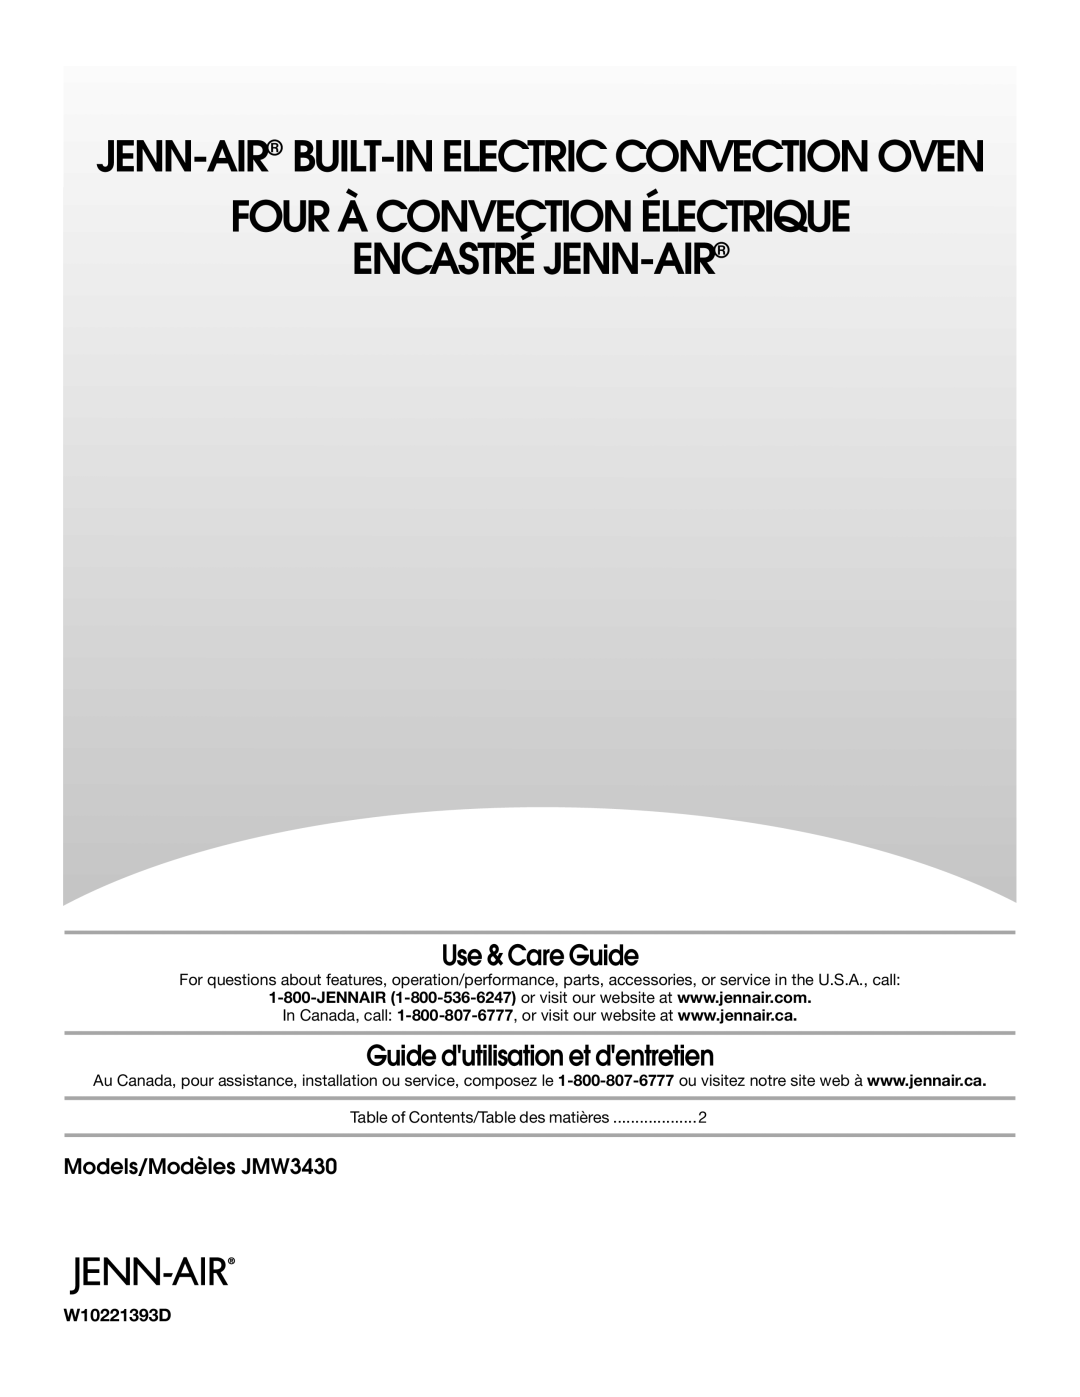 Jenn-Air manual Models/Modèles JMW3430, W10221393D, Four À Convection Électrique Encastré Jenn-Air, Use & Care Guide 